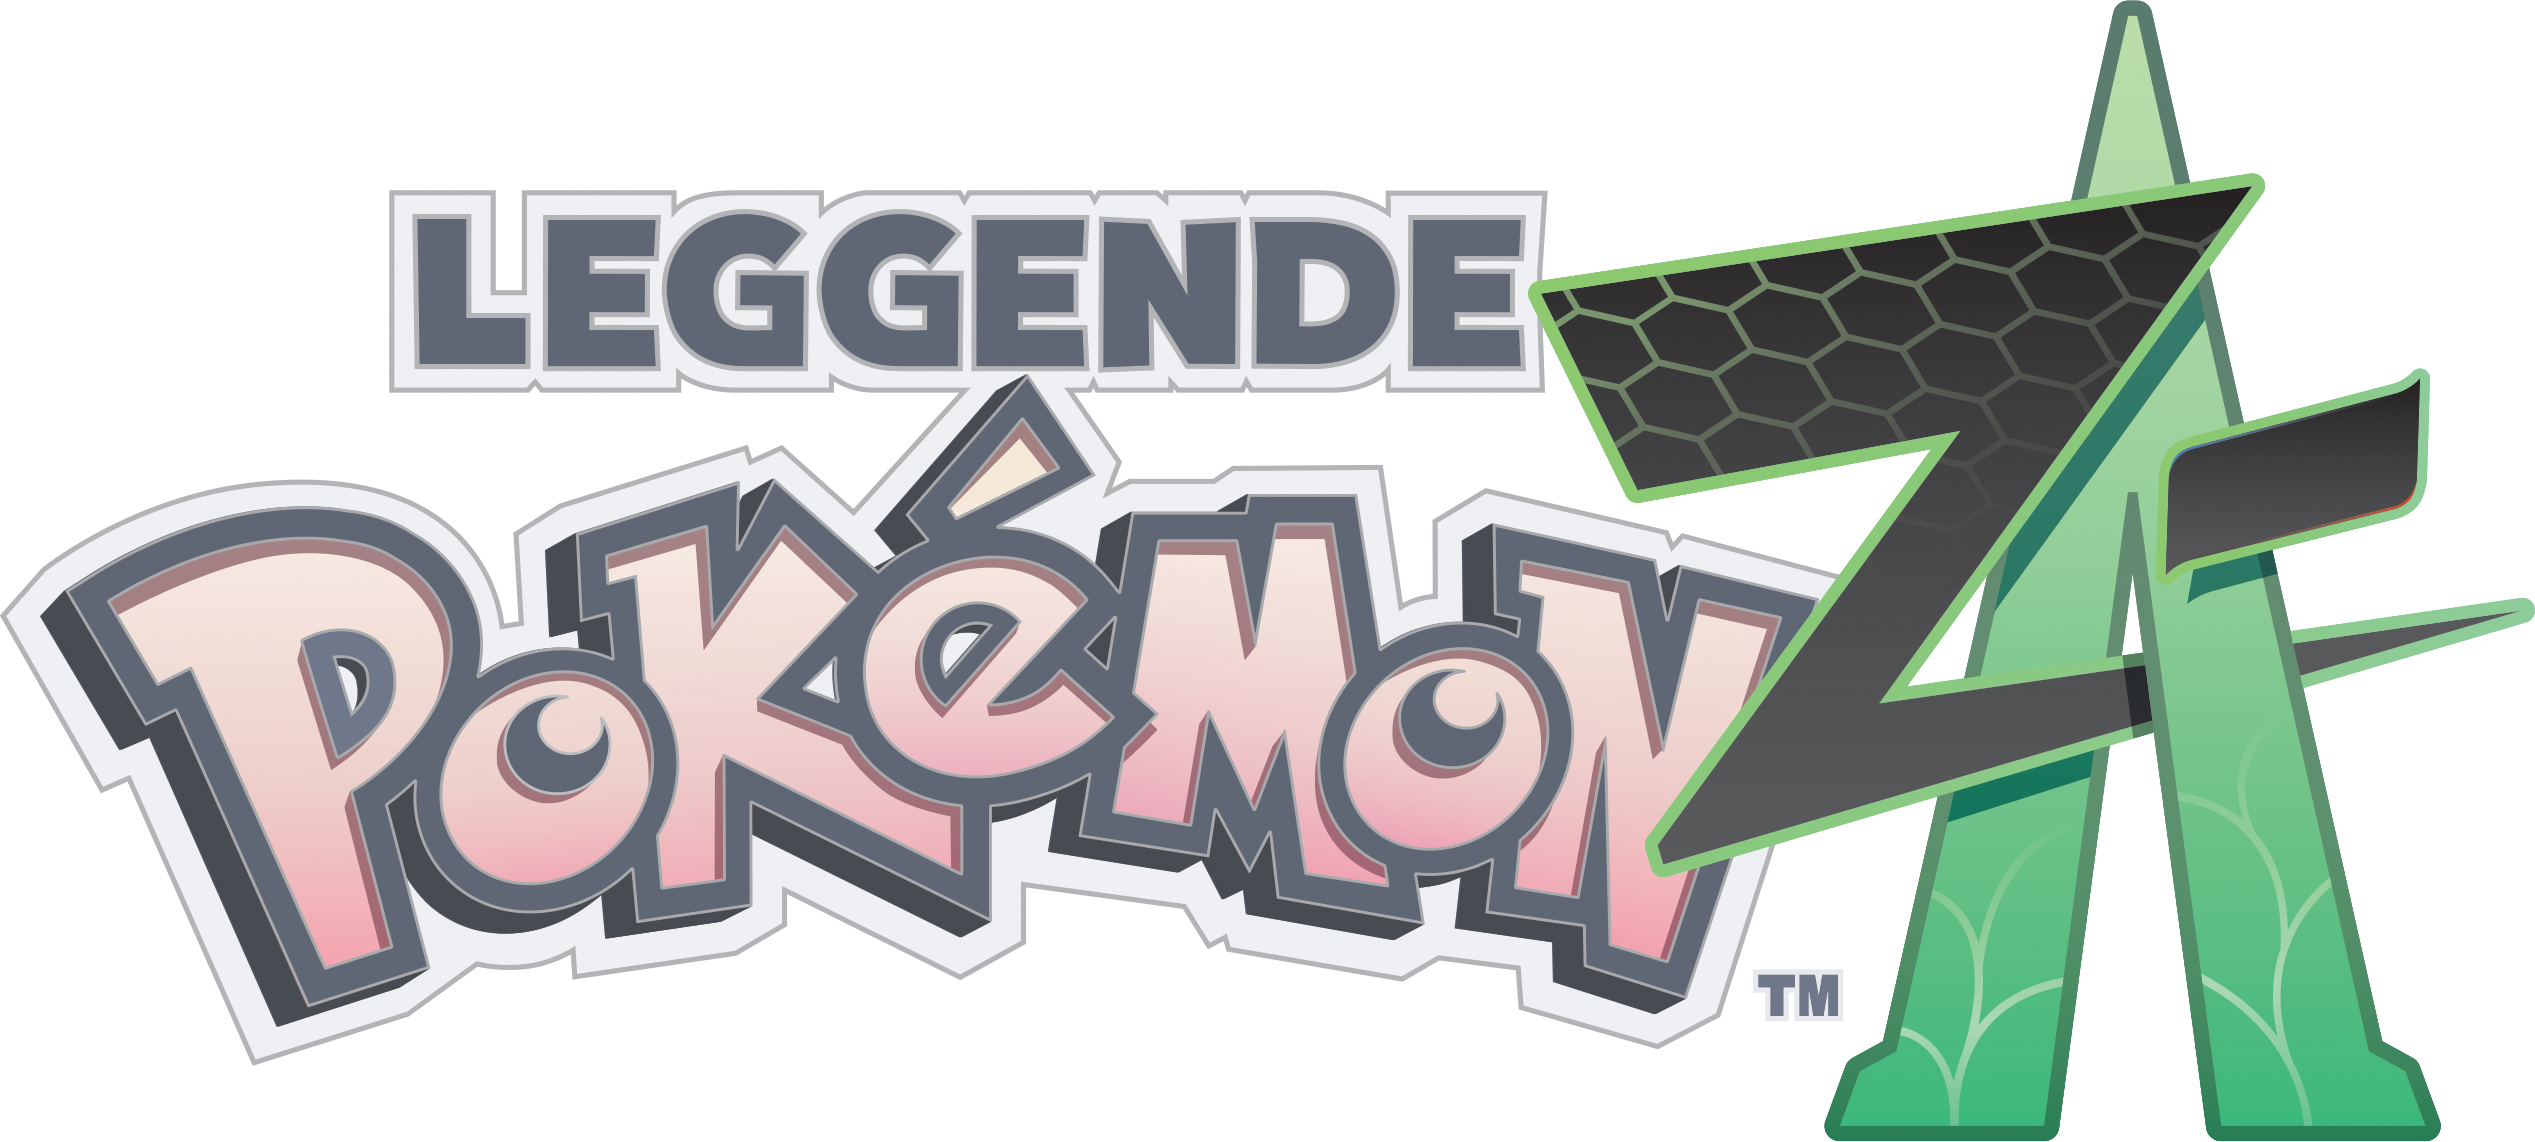 Leggende Pokémon: Z-A logo